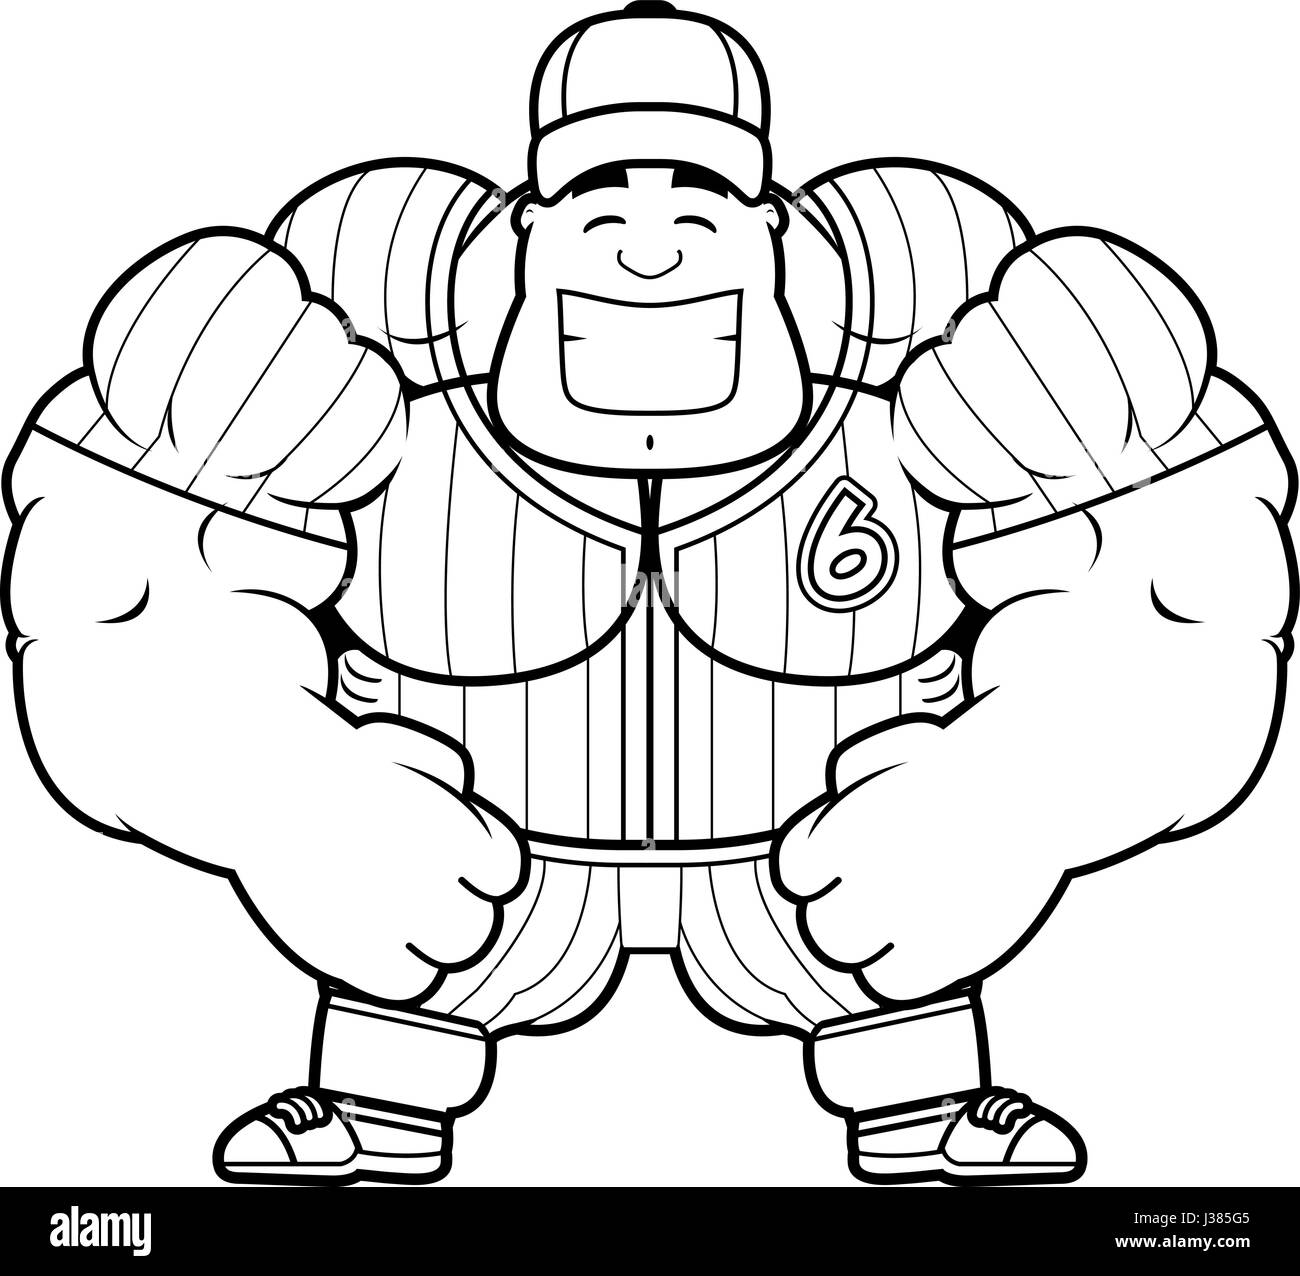 Un cartoon illustration d'un joueur de baseball de la torsion musculaire. Illustration de Vecteur